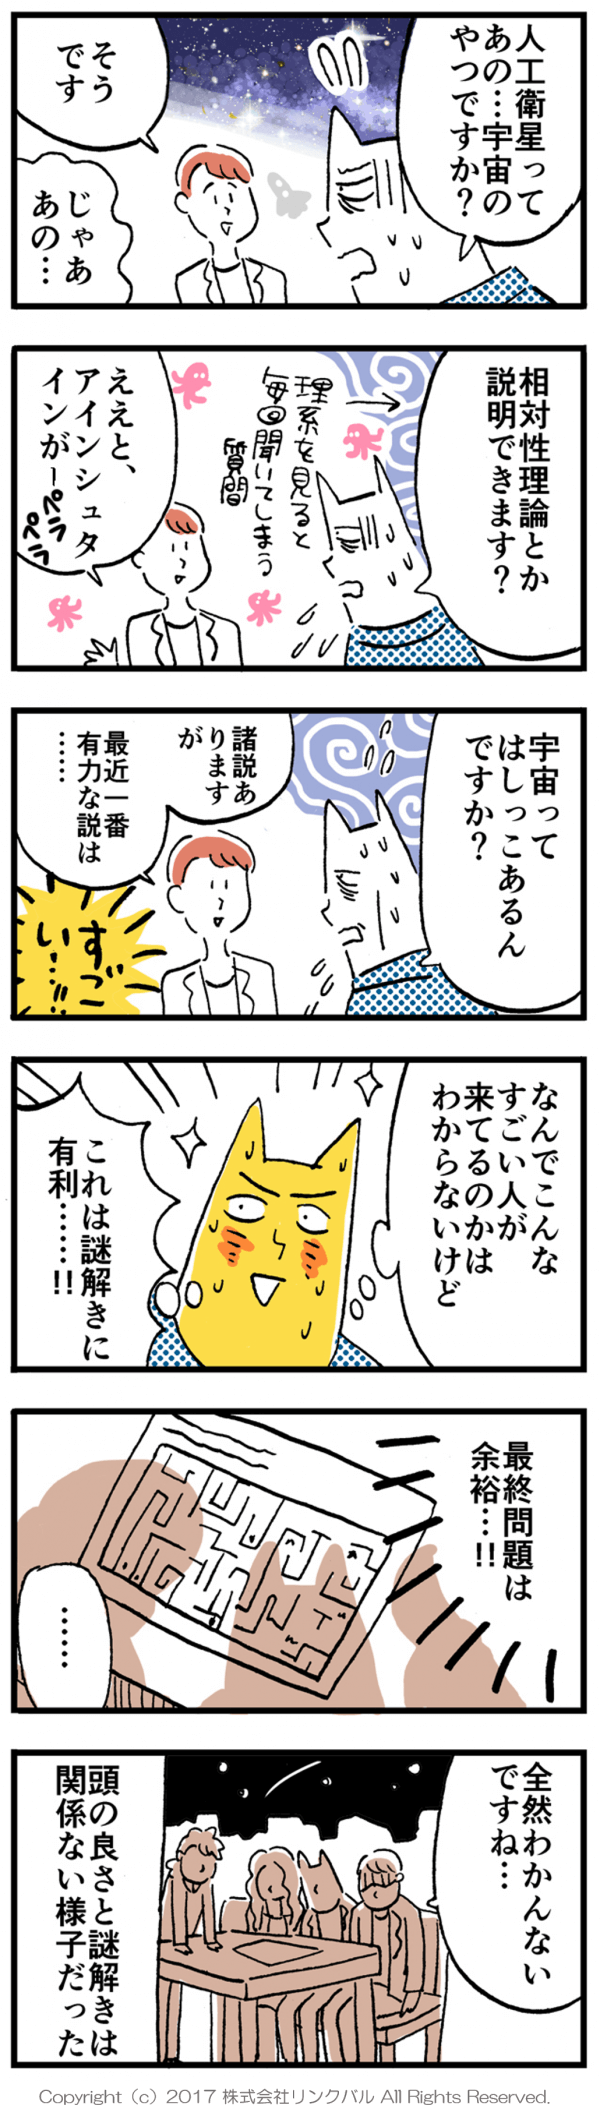 婚活漫画 アラサー街コン物語 第16話 理系の人 Machicon Japan